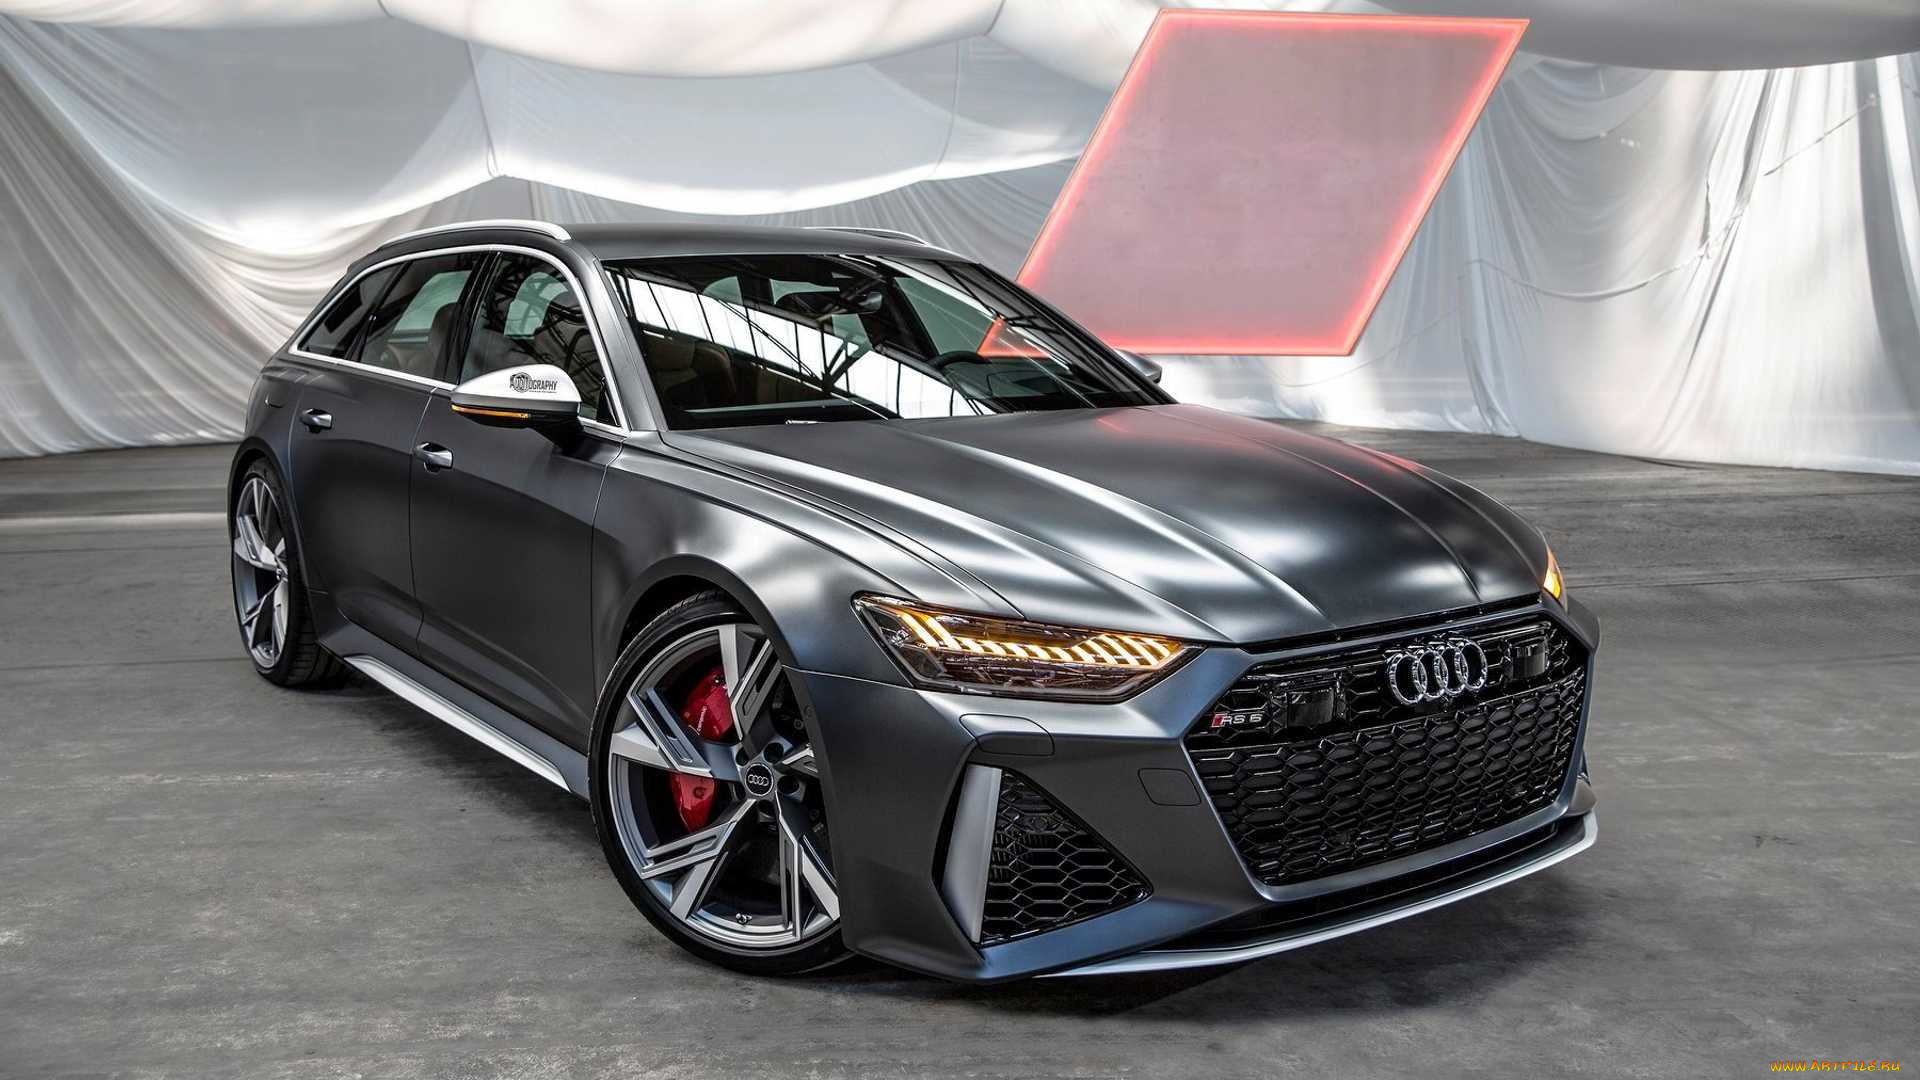  Audi RS6 Avant 2020  Audi       audi rs6 avant 2020  audi rs6 avant             